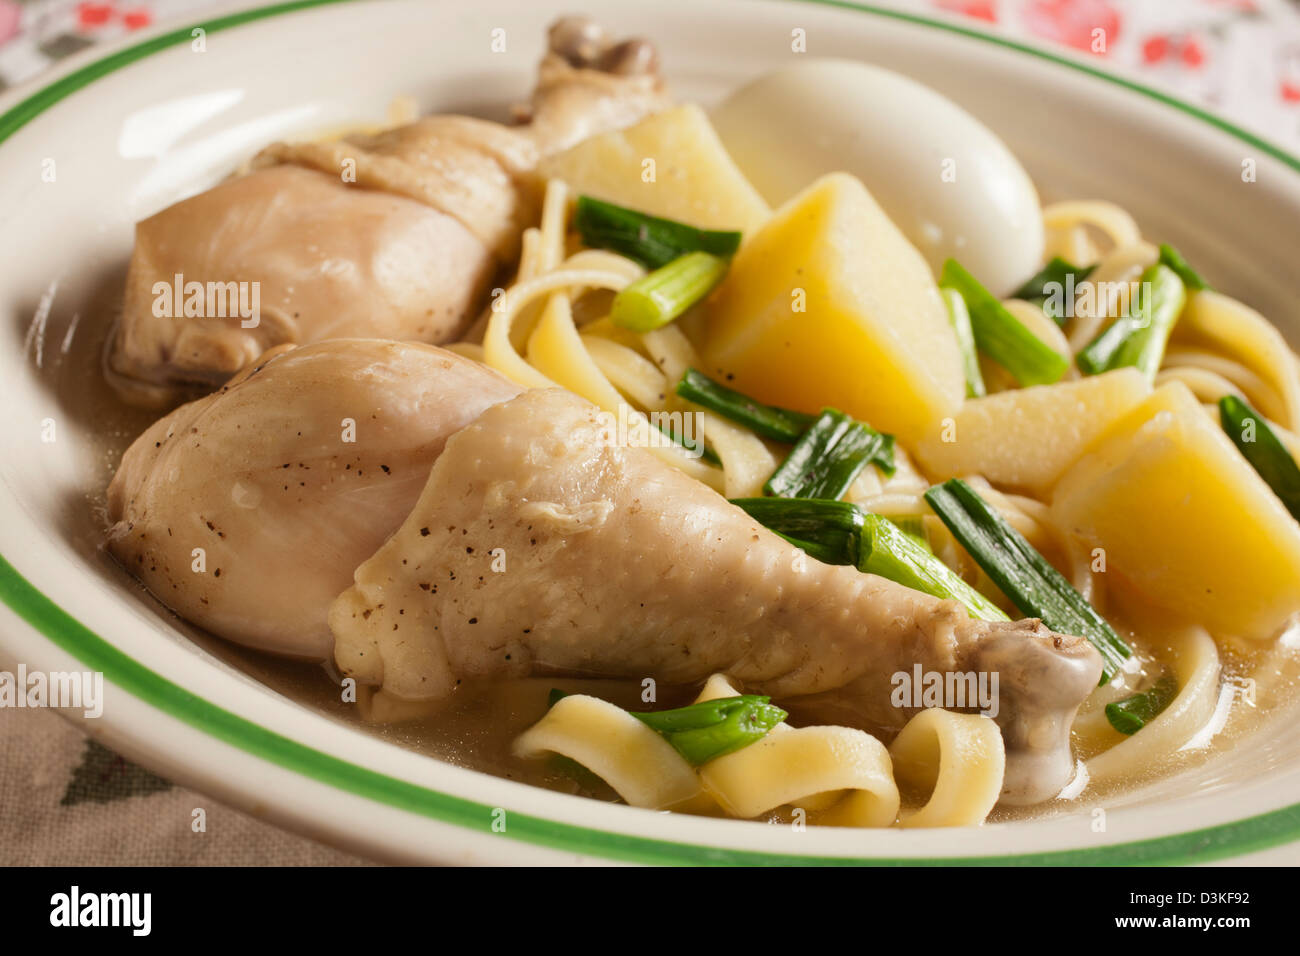 Caldo de gallina, la clásica sopa de pollo con fideos peruana Foto de stock